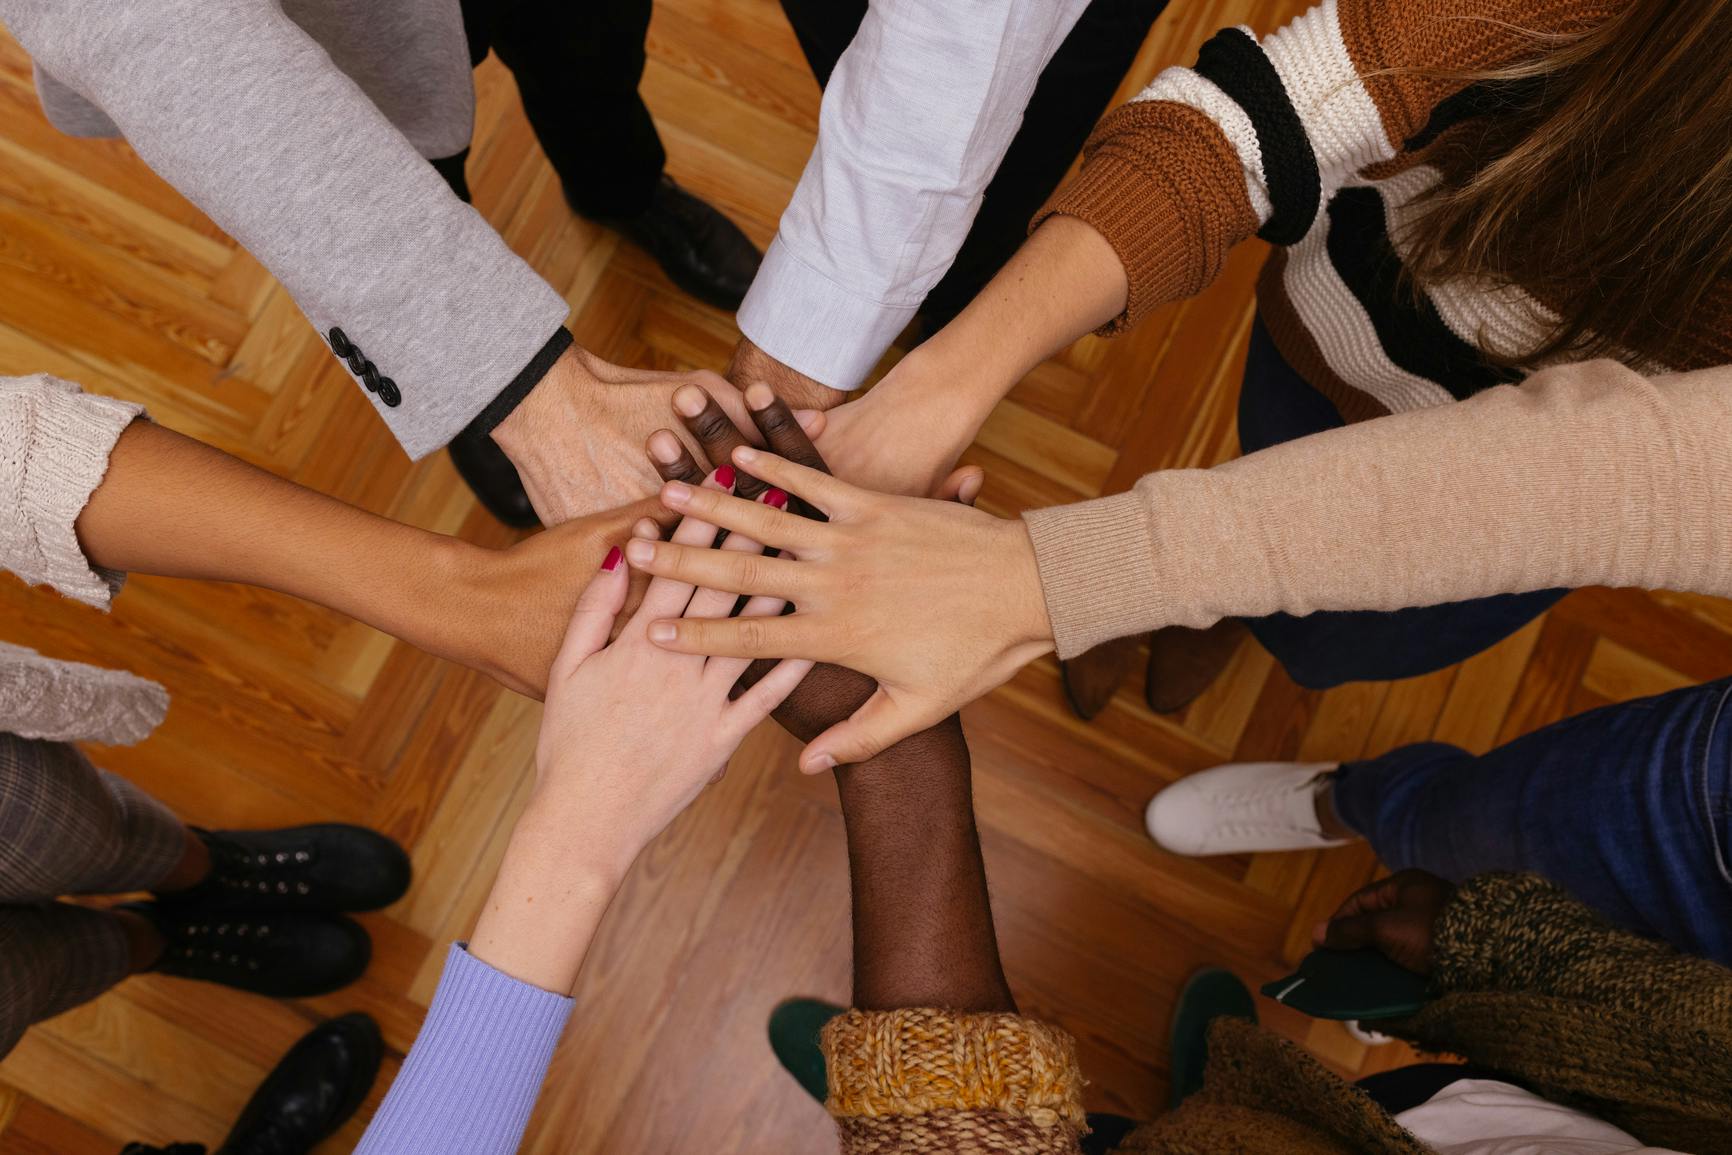 Fotografía en primer plano de un grupo de personas de pie con los brazos apuntando hacia adentro, formando un círculo con las manos superpuestas.